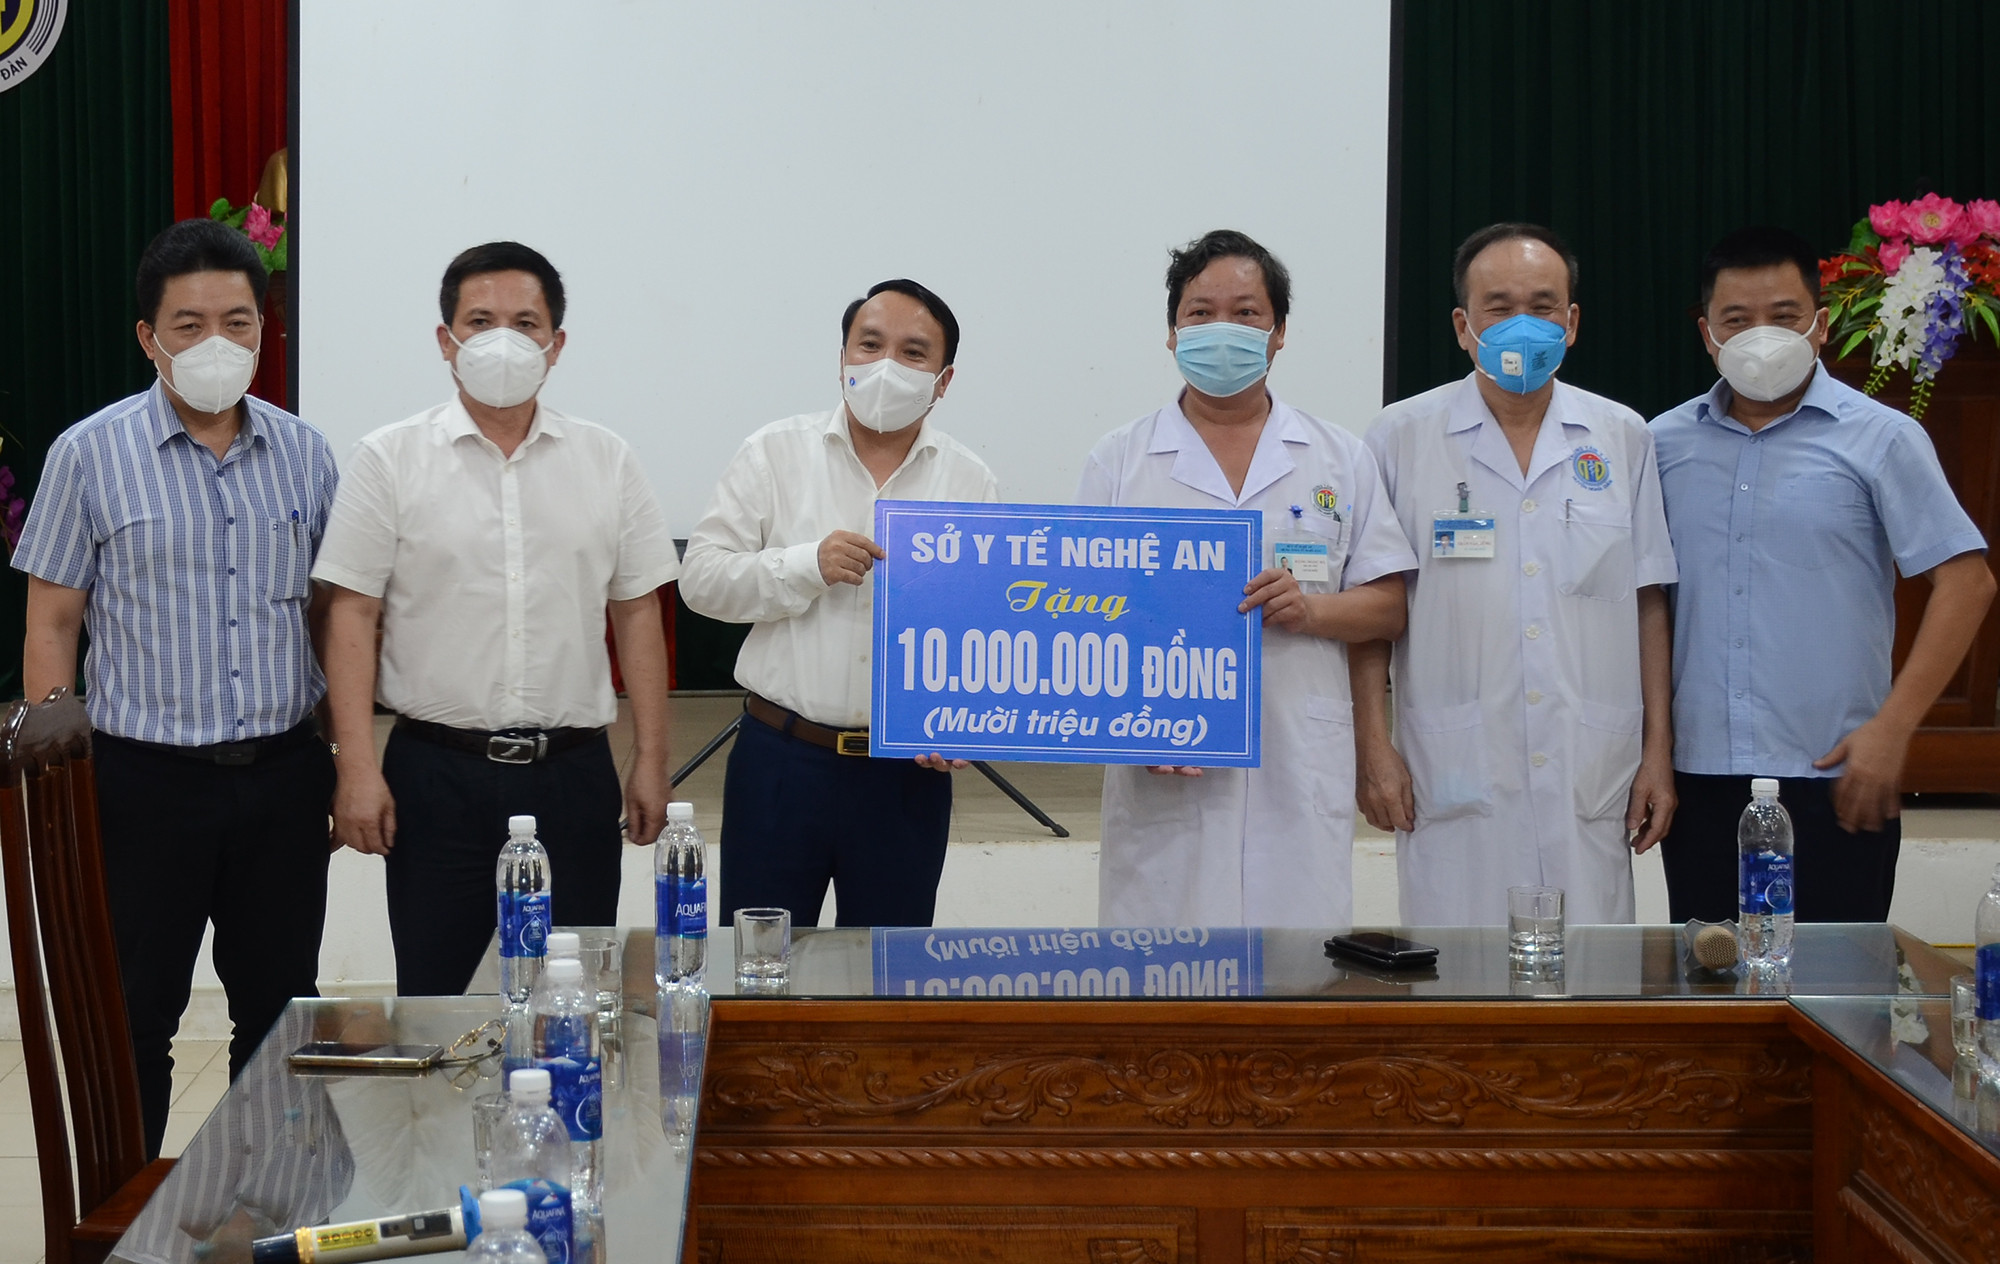 Sở Y tế Nghệ An tặng quà cho Bệnh viện Dã chiến số 2 Nghệ An. Ảnh: Thành Chung